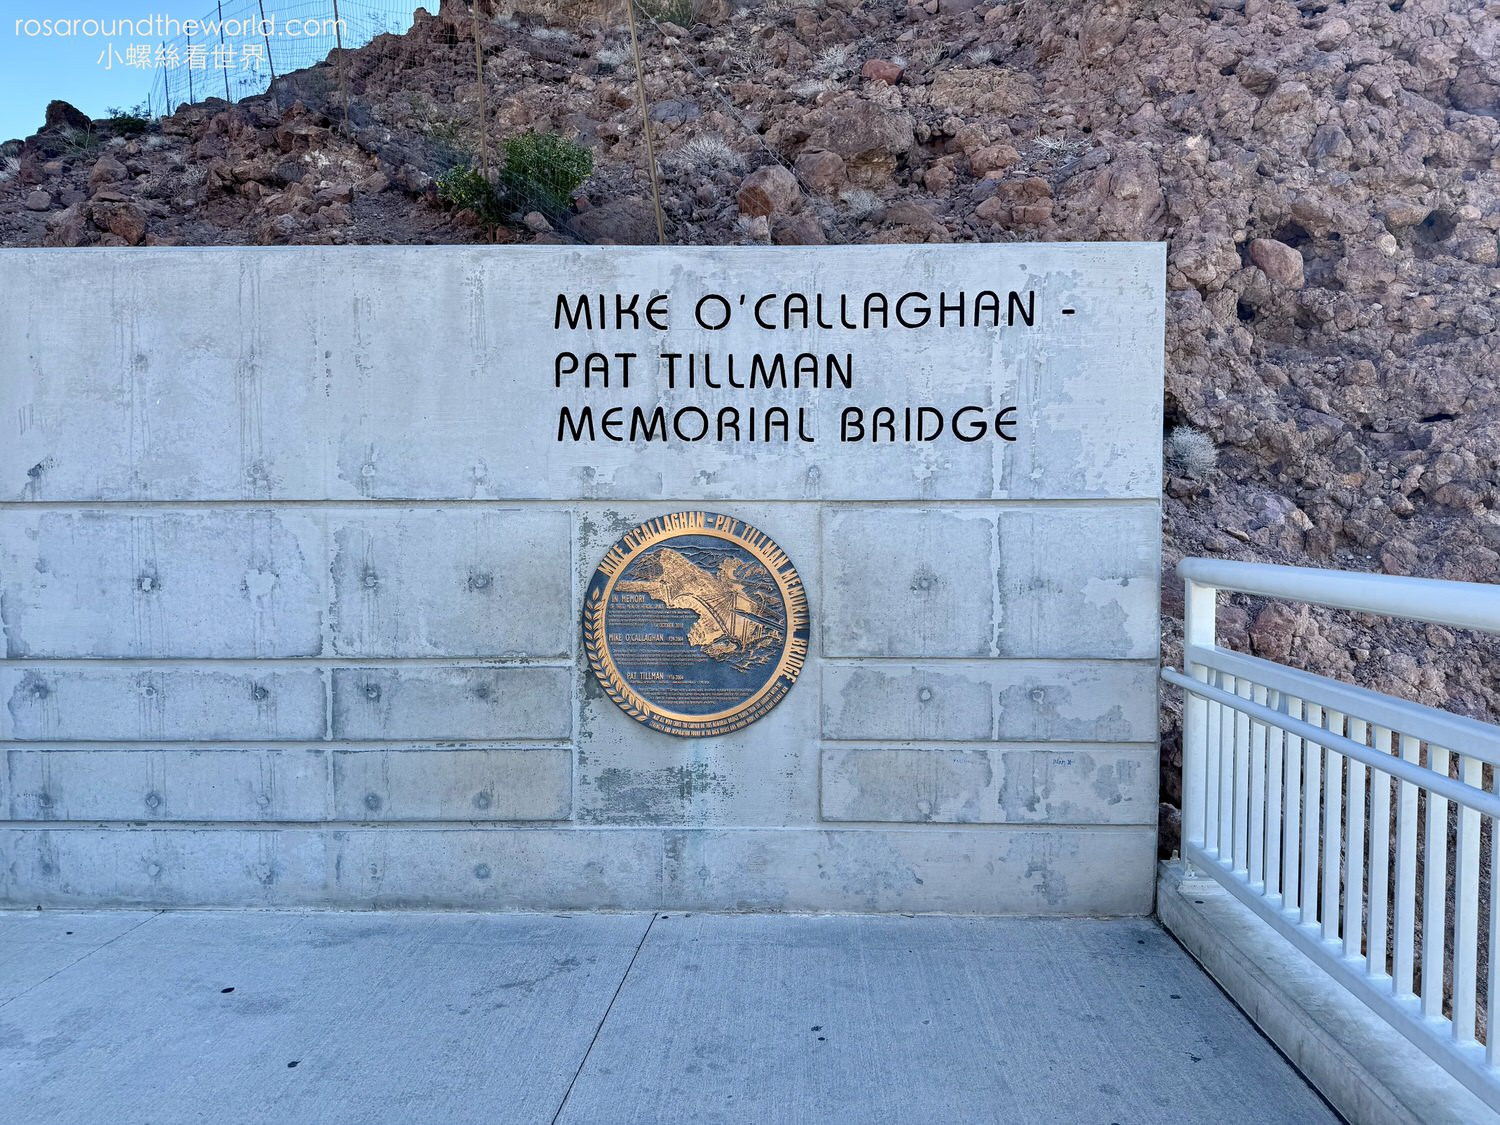 胡佛水壩 Hoover Dam
沙漠之鑽(Diamond on the desert)
美西公路旅遊
麥克帕特紀念大橋(Mike O’Callaghan-Pat Tillman Memorial Bridge)